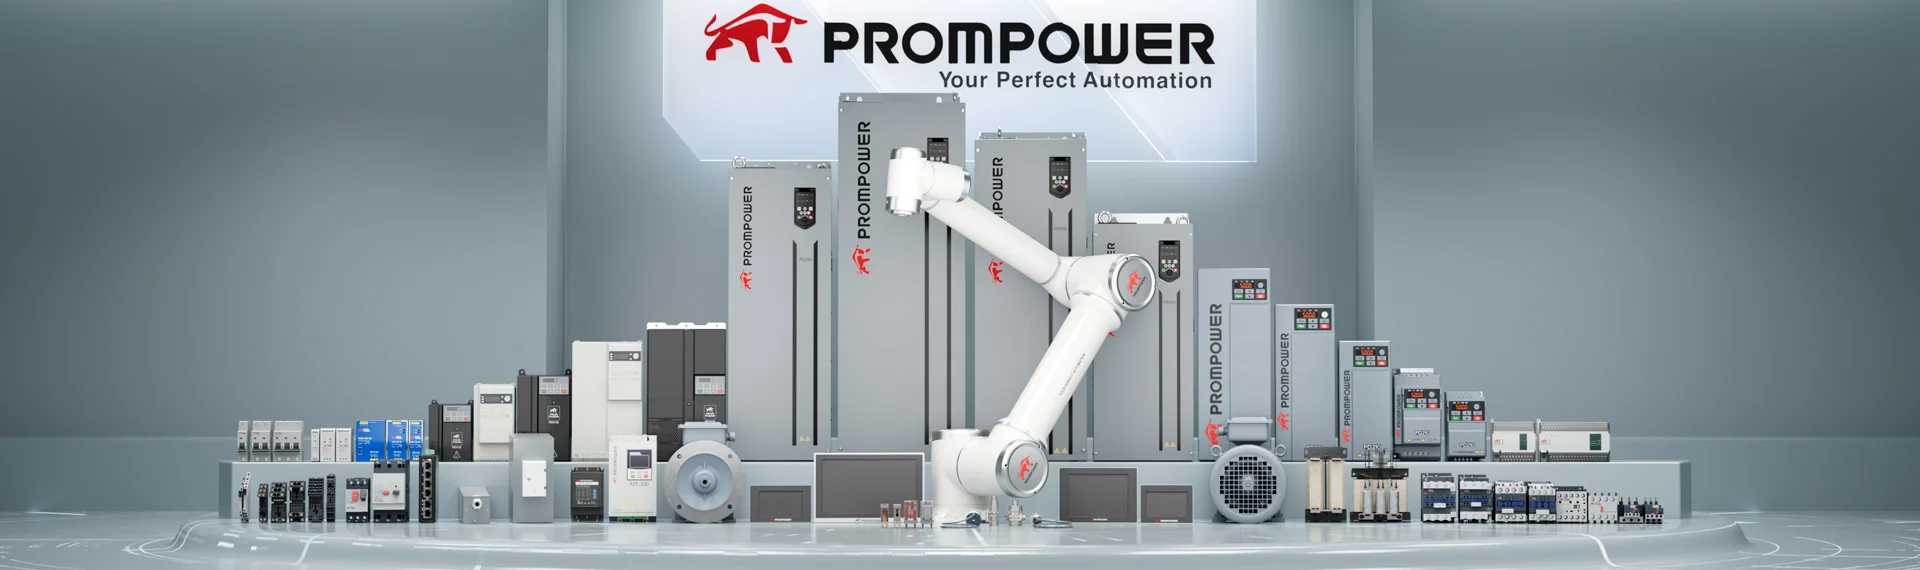 PromPower баннер